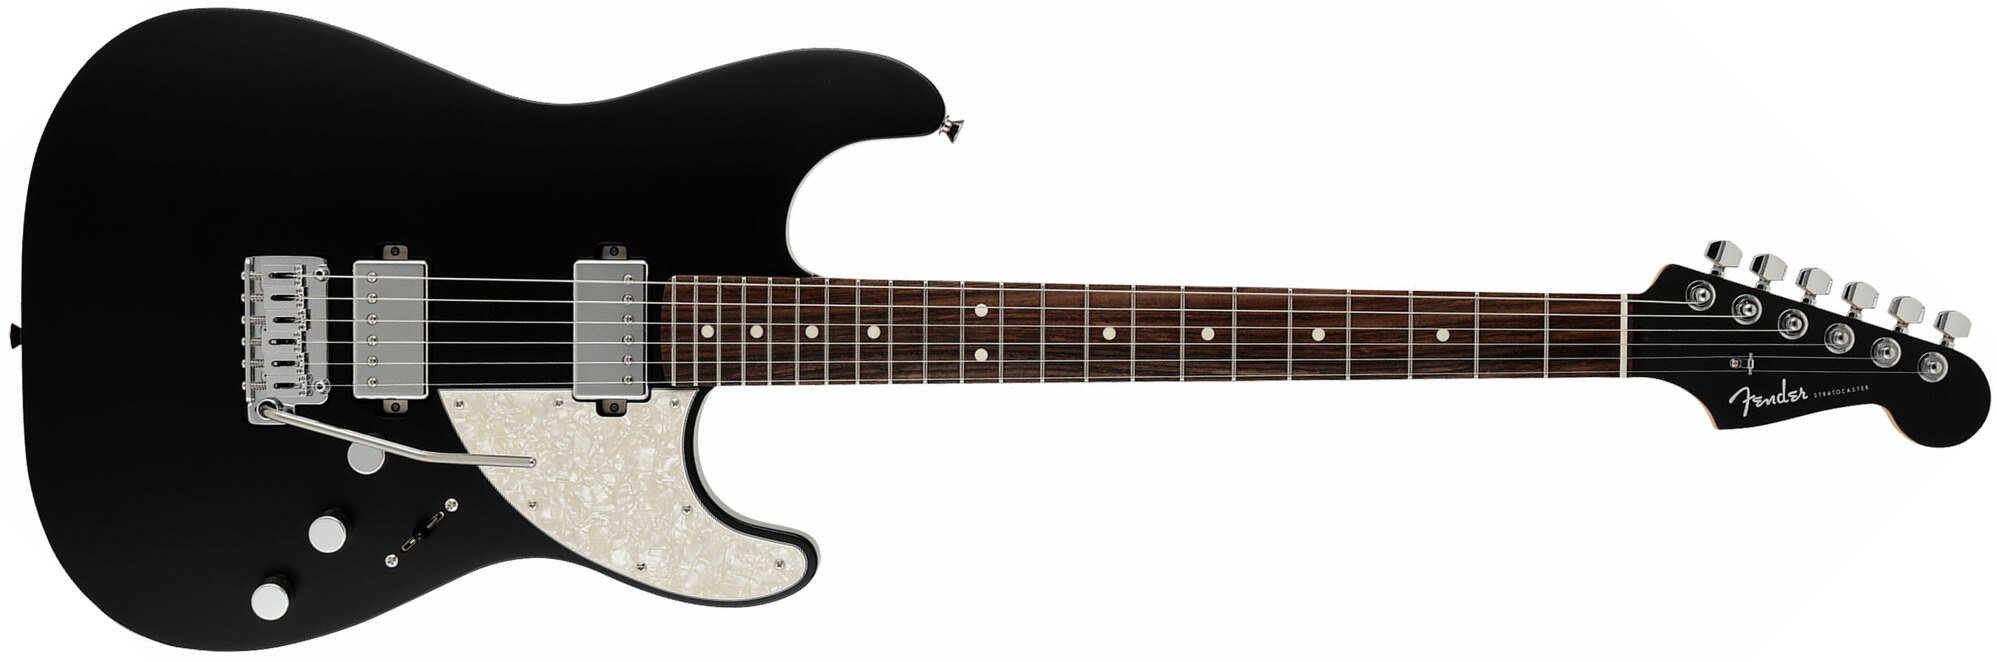 Fender Strat Elemental Mij Jap 2h Trem Rw - Stone Black - Guitarra eléctrica con forma de str. - Main picture